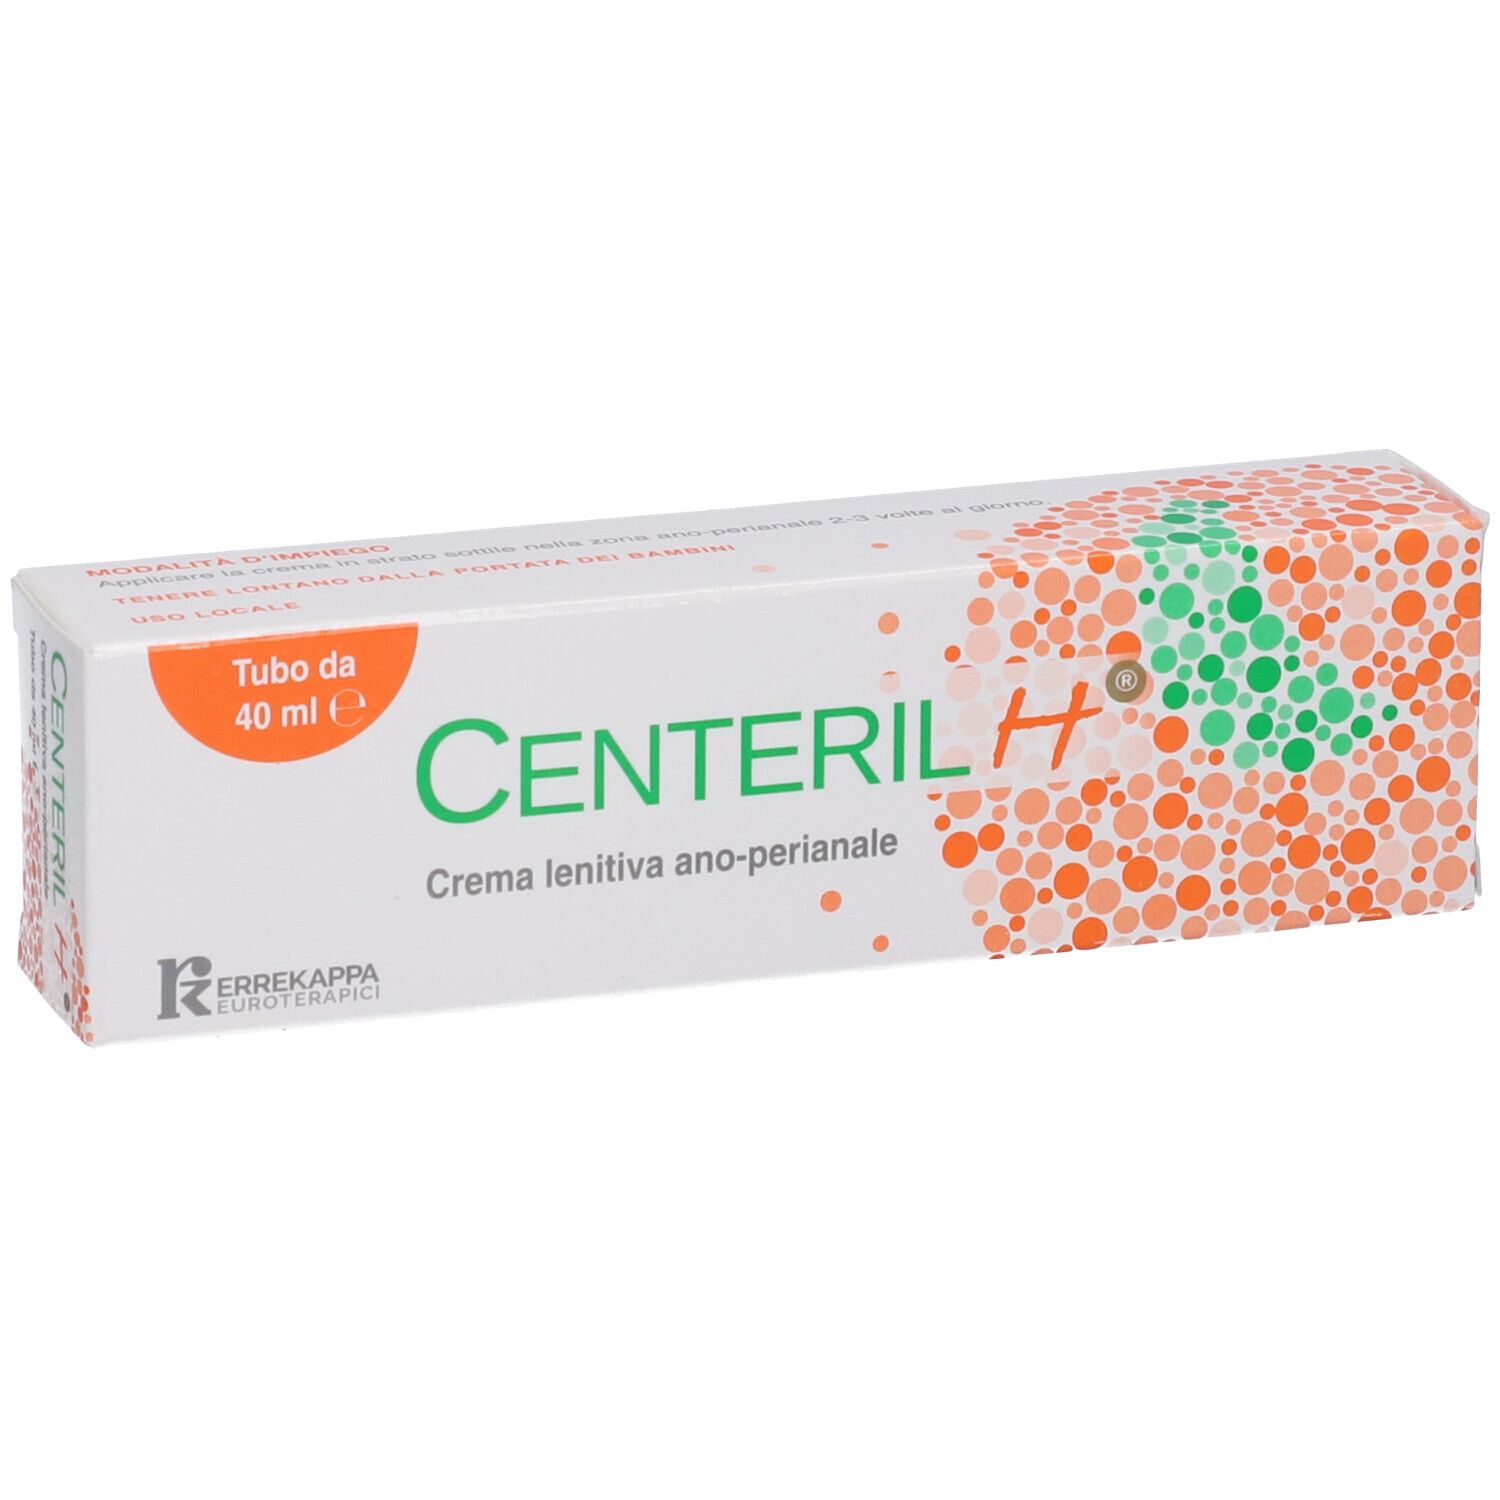 Centeril H® Crema